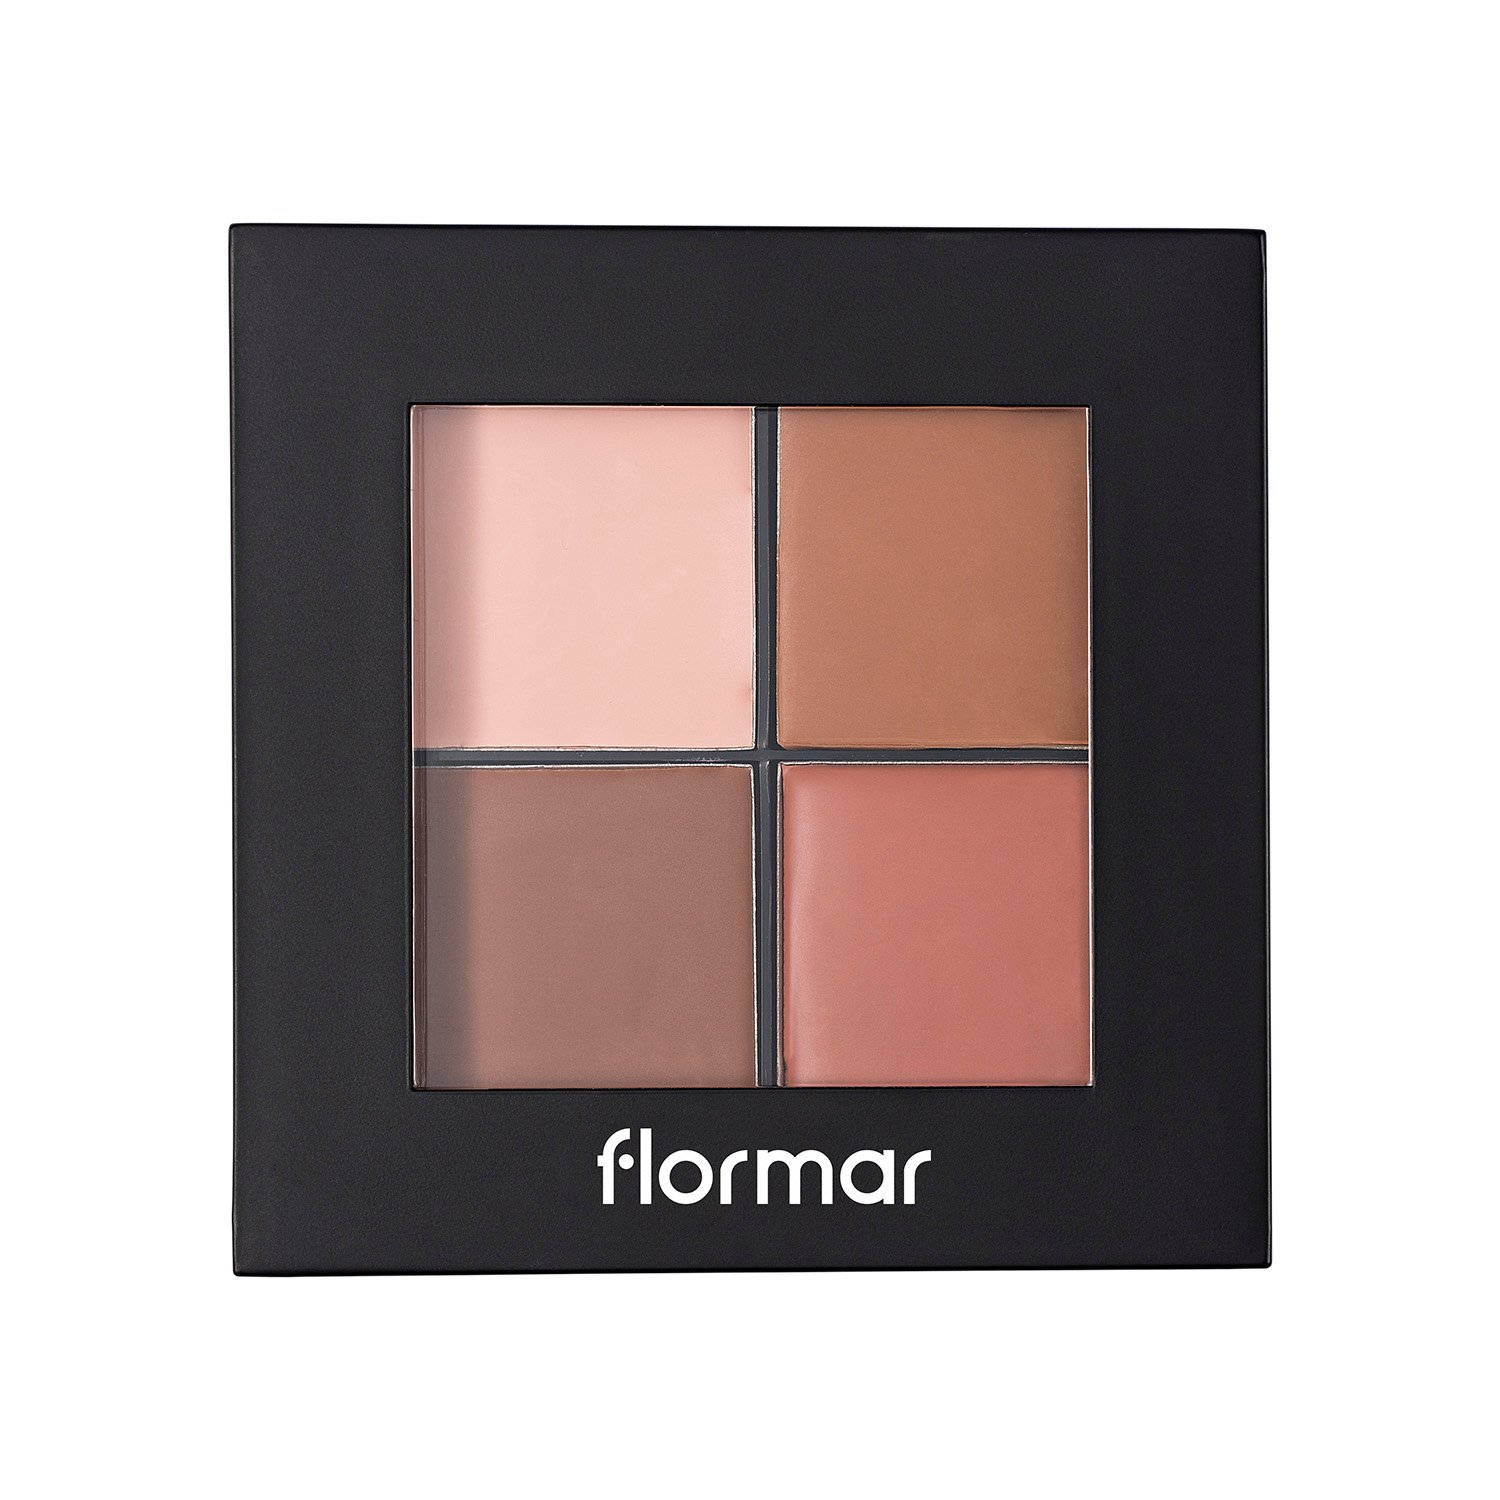 Палетка для контуринга Flormar Contour Palette, тон Light, 10 г (8000019544906) - фото 1